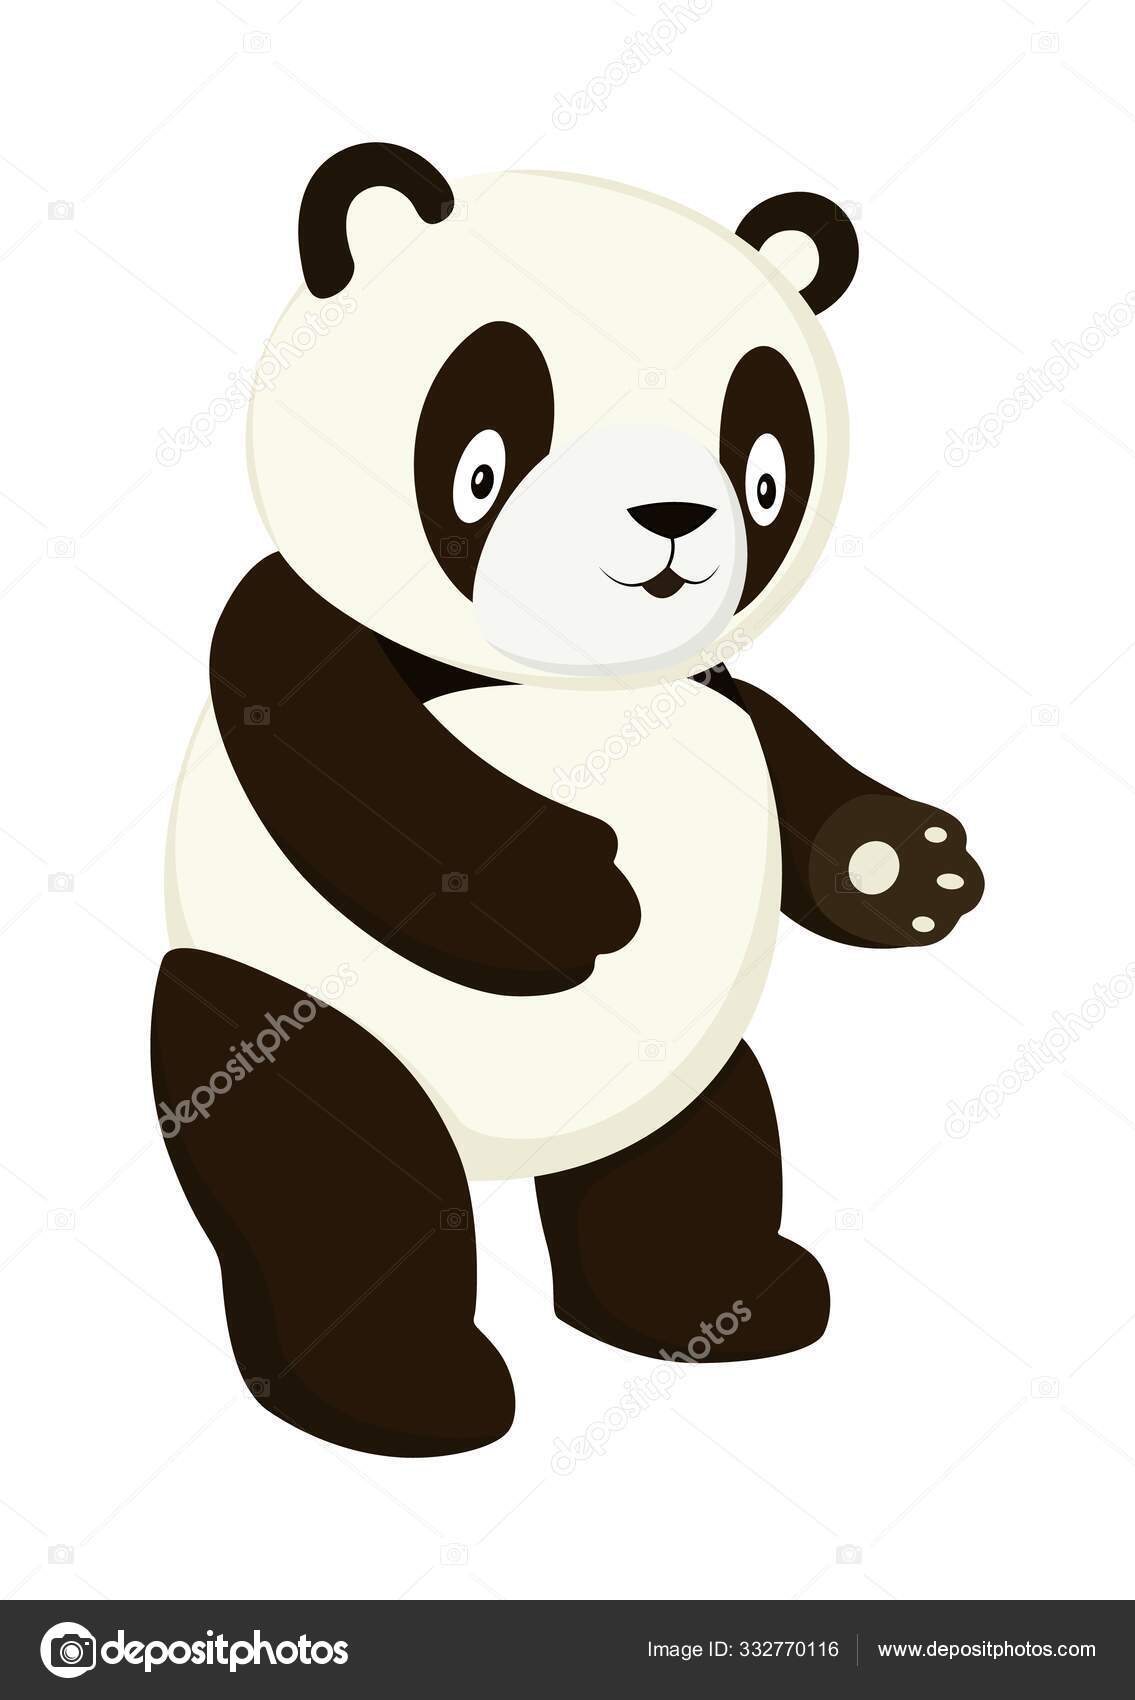 Conjunto Com Imagens De Urso Panda Dos Desenhos Animados, Preto E